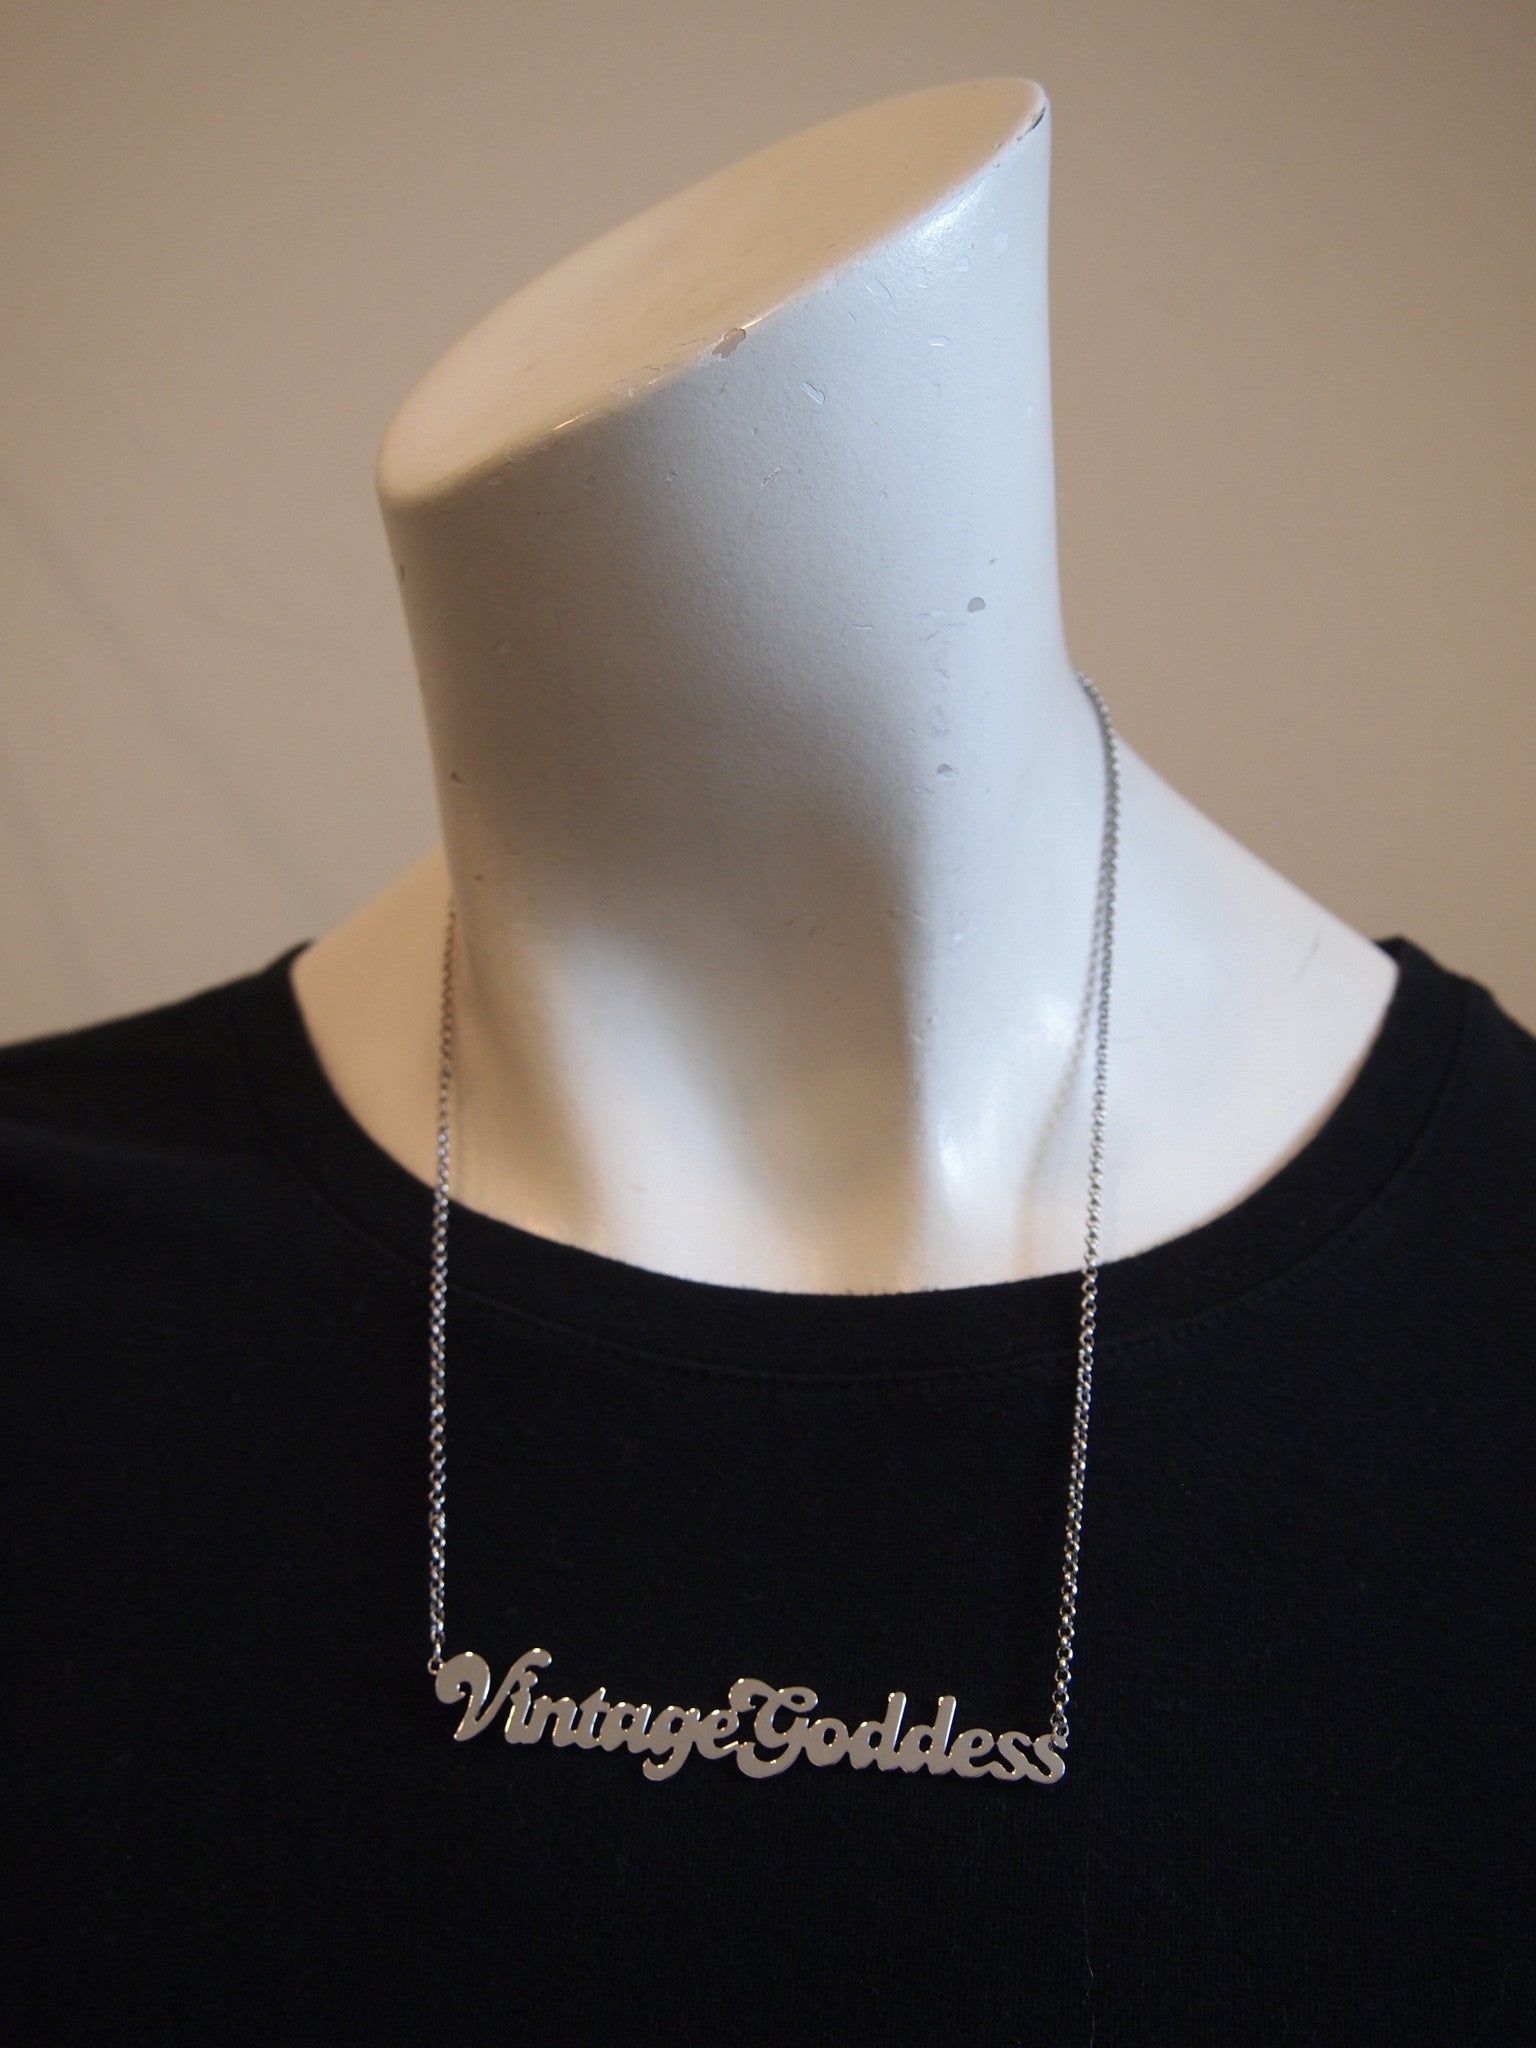 Handcut Nameplate Necklace -  Vintage Goddess